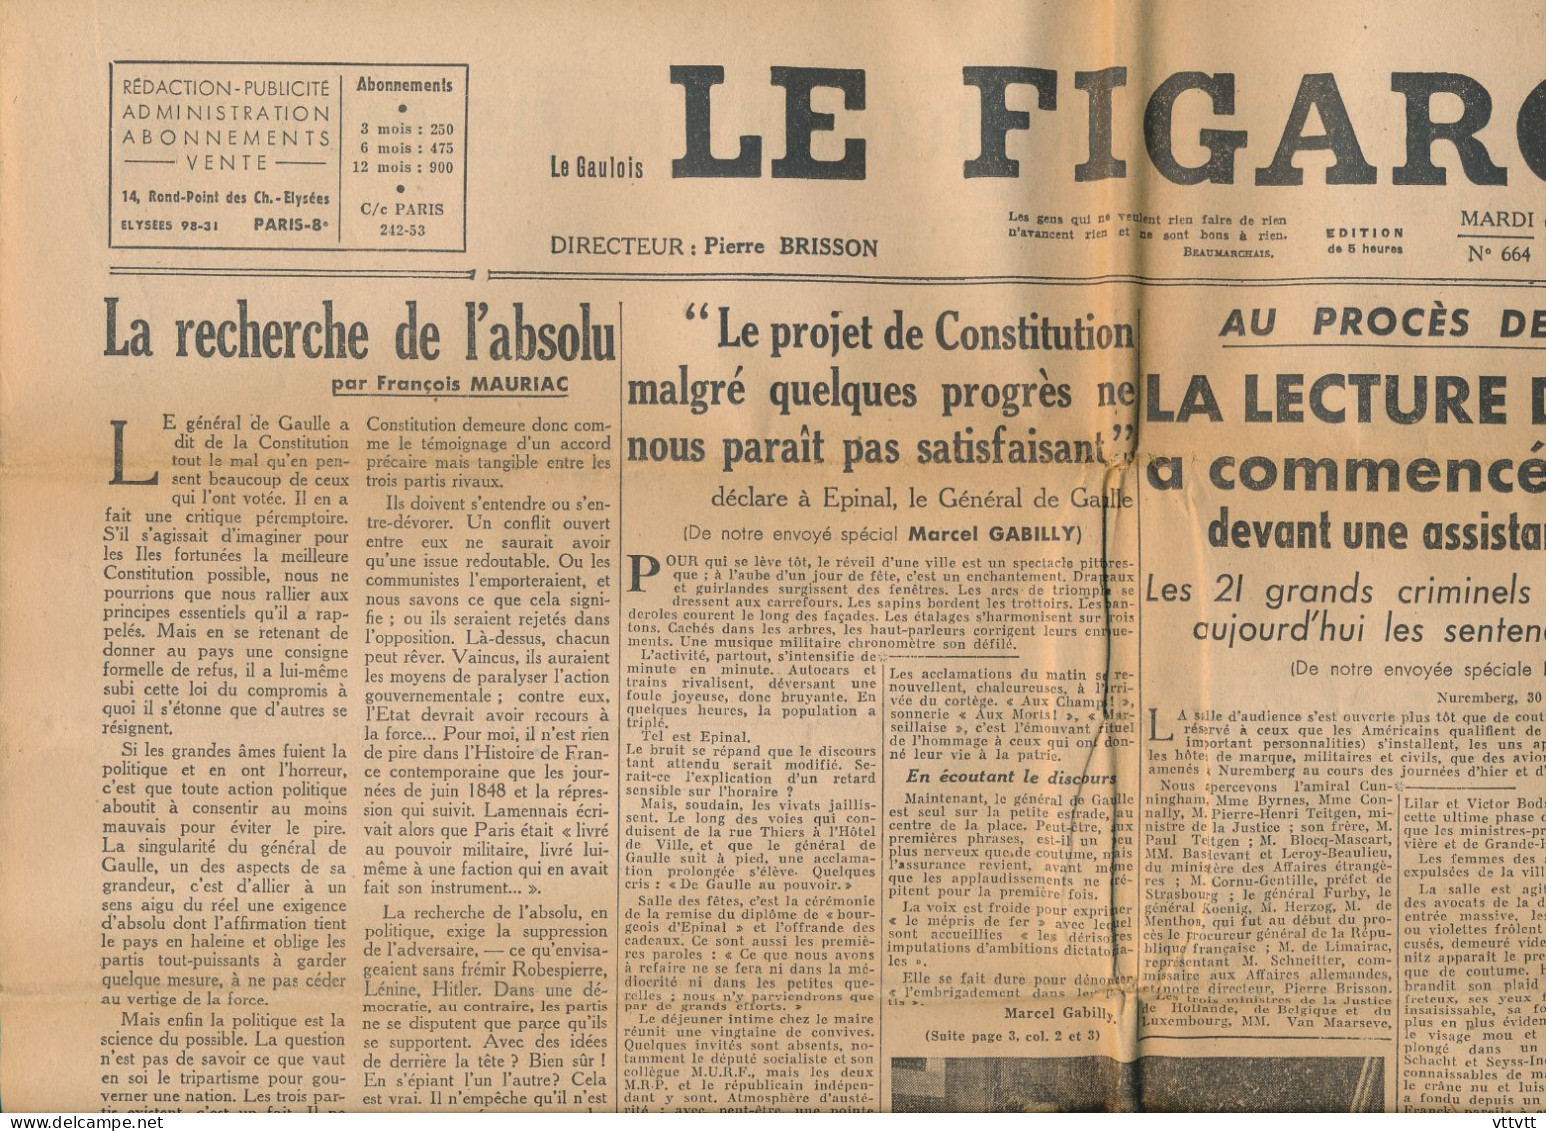 LE FIGARO, Mardi 1er Octobre 1946, N° 664, Lecture Du Verdict Au Procès De Nuremberg, Projet De Constitution, De Gaulle - Testi Generali